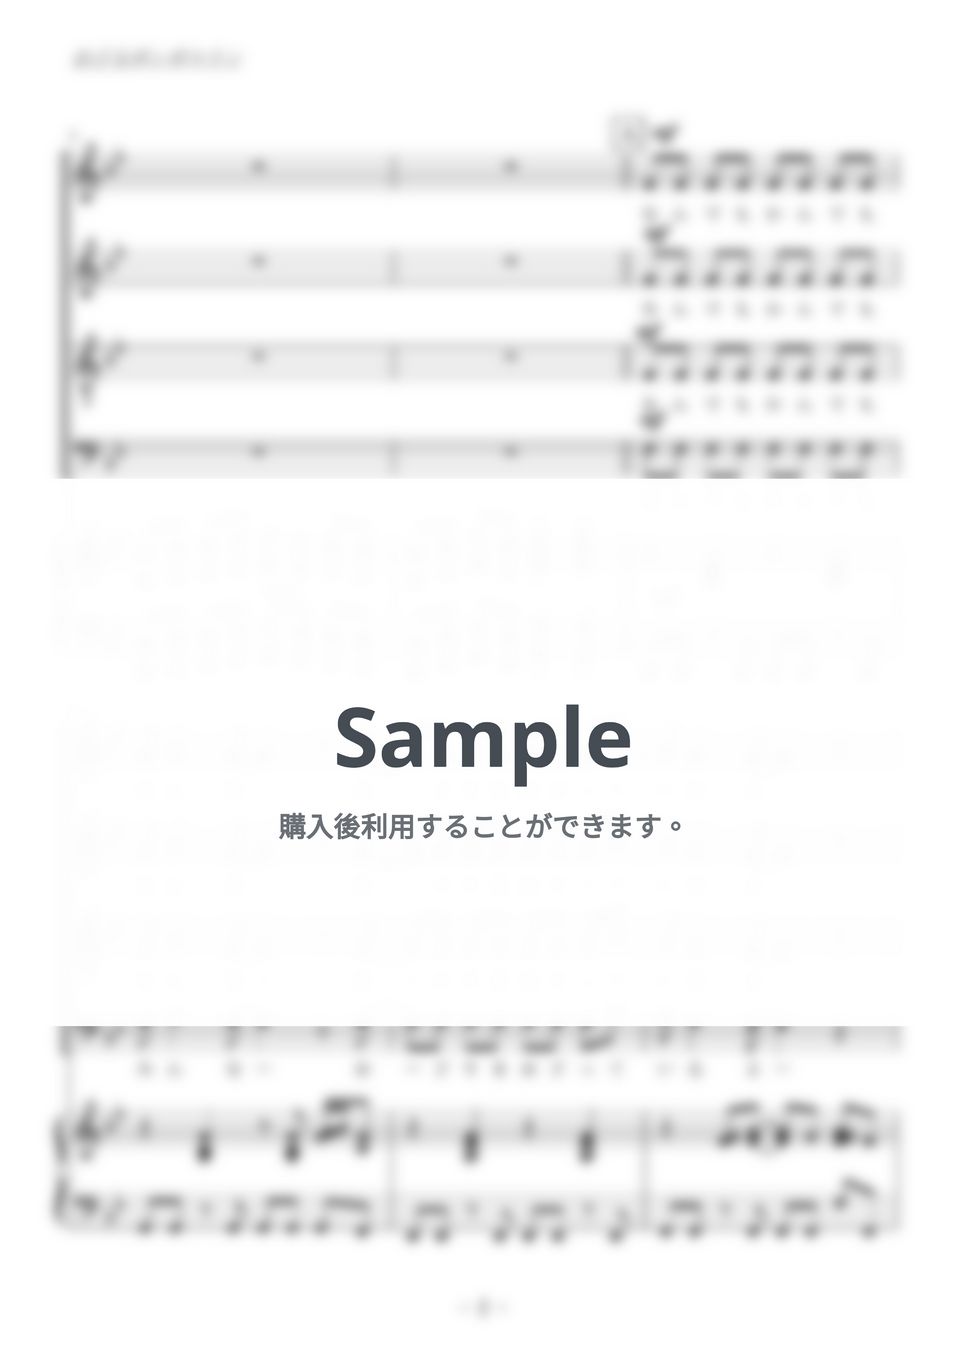 ちびまる子ちゃん主題歌 - おどるポンポコリン (混声四部合唱) by kiminabe